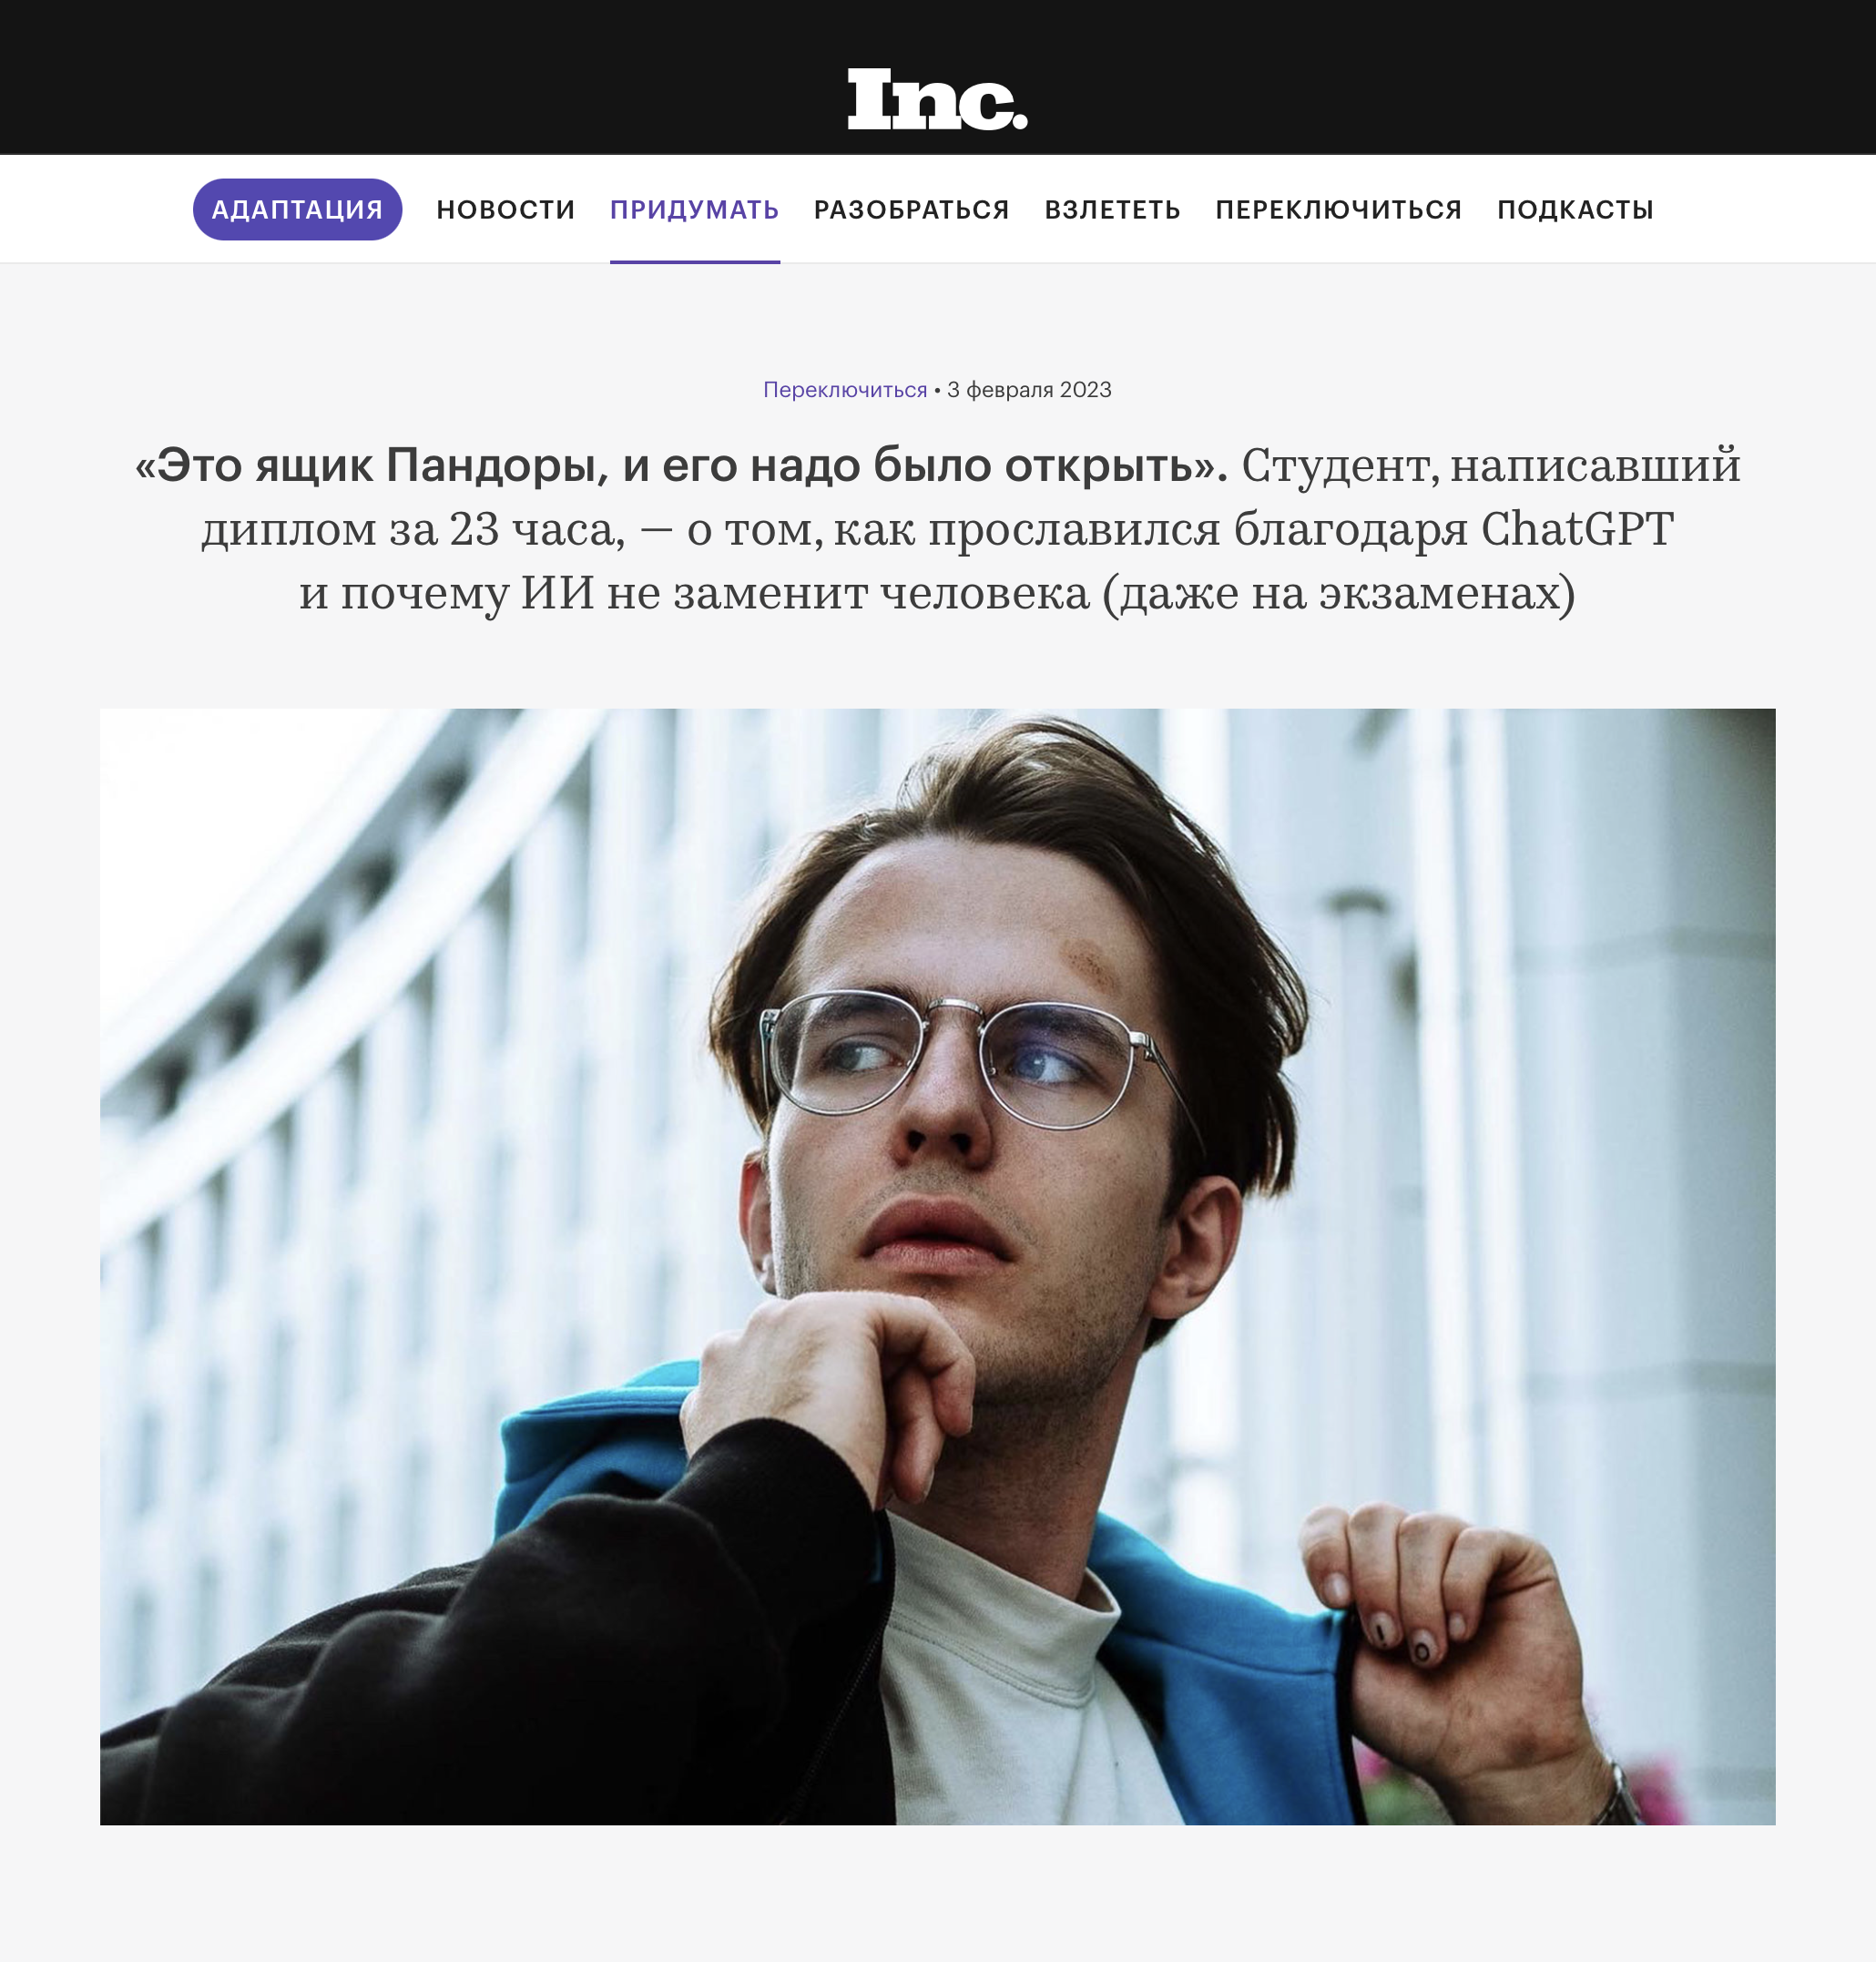 Мое интервью изданию Inc. Источник: incrussia.ru